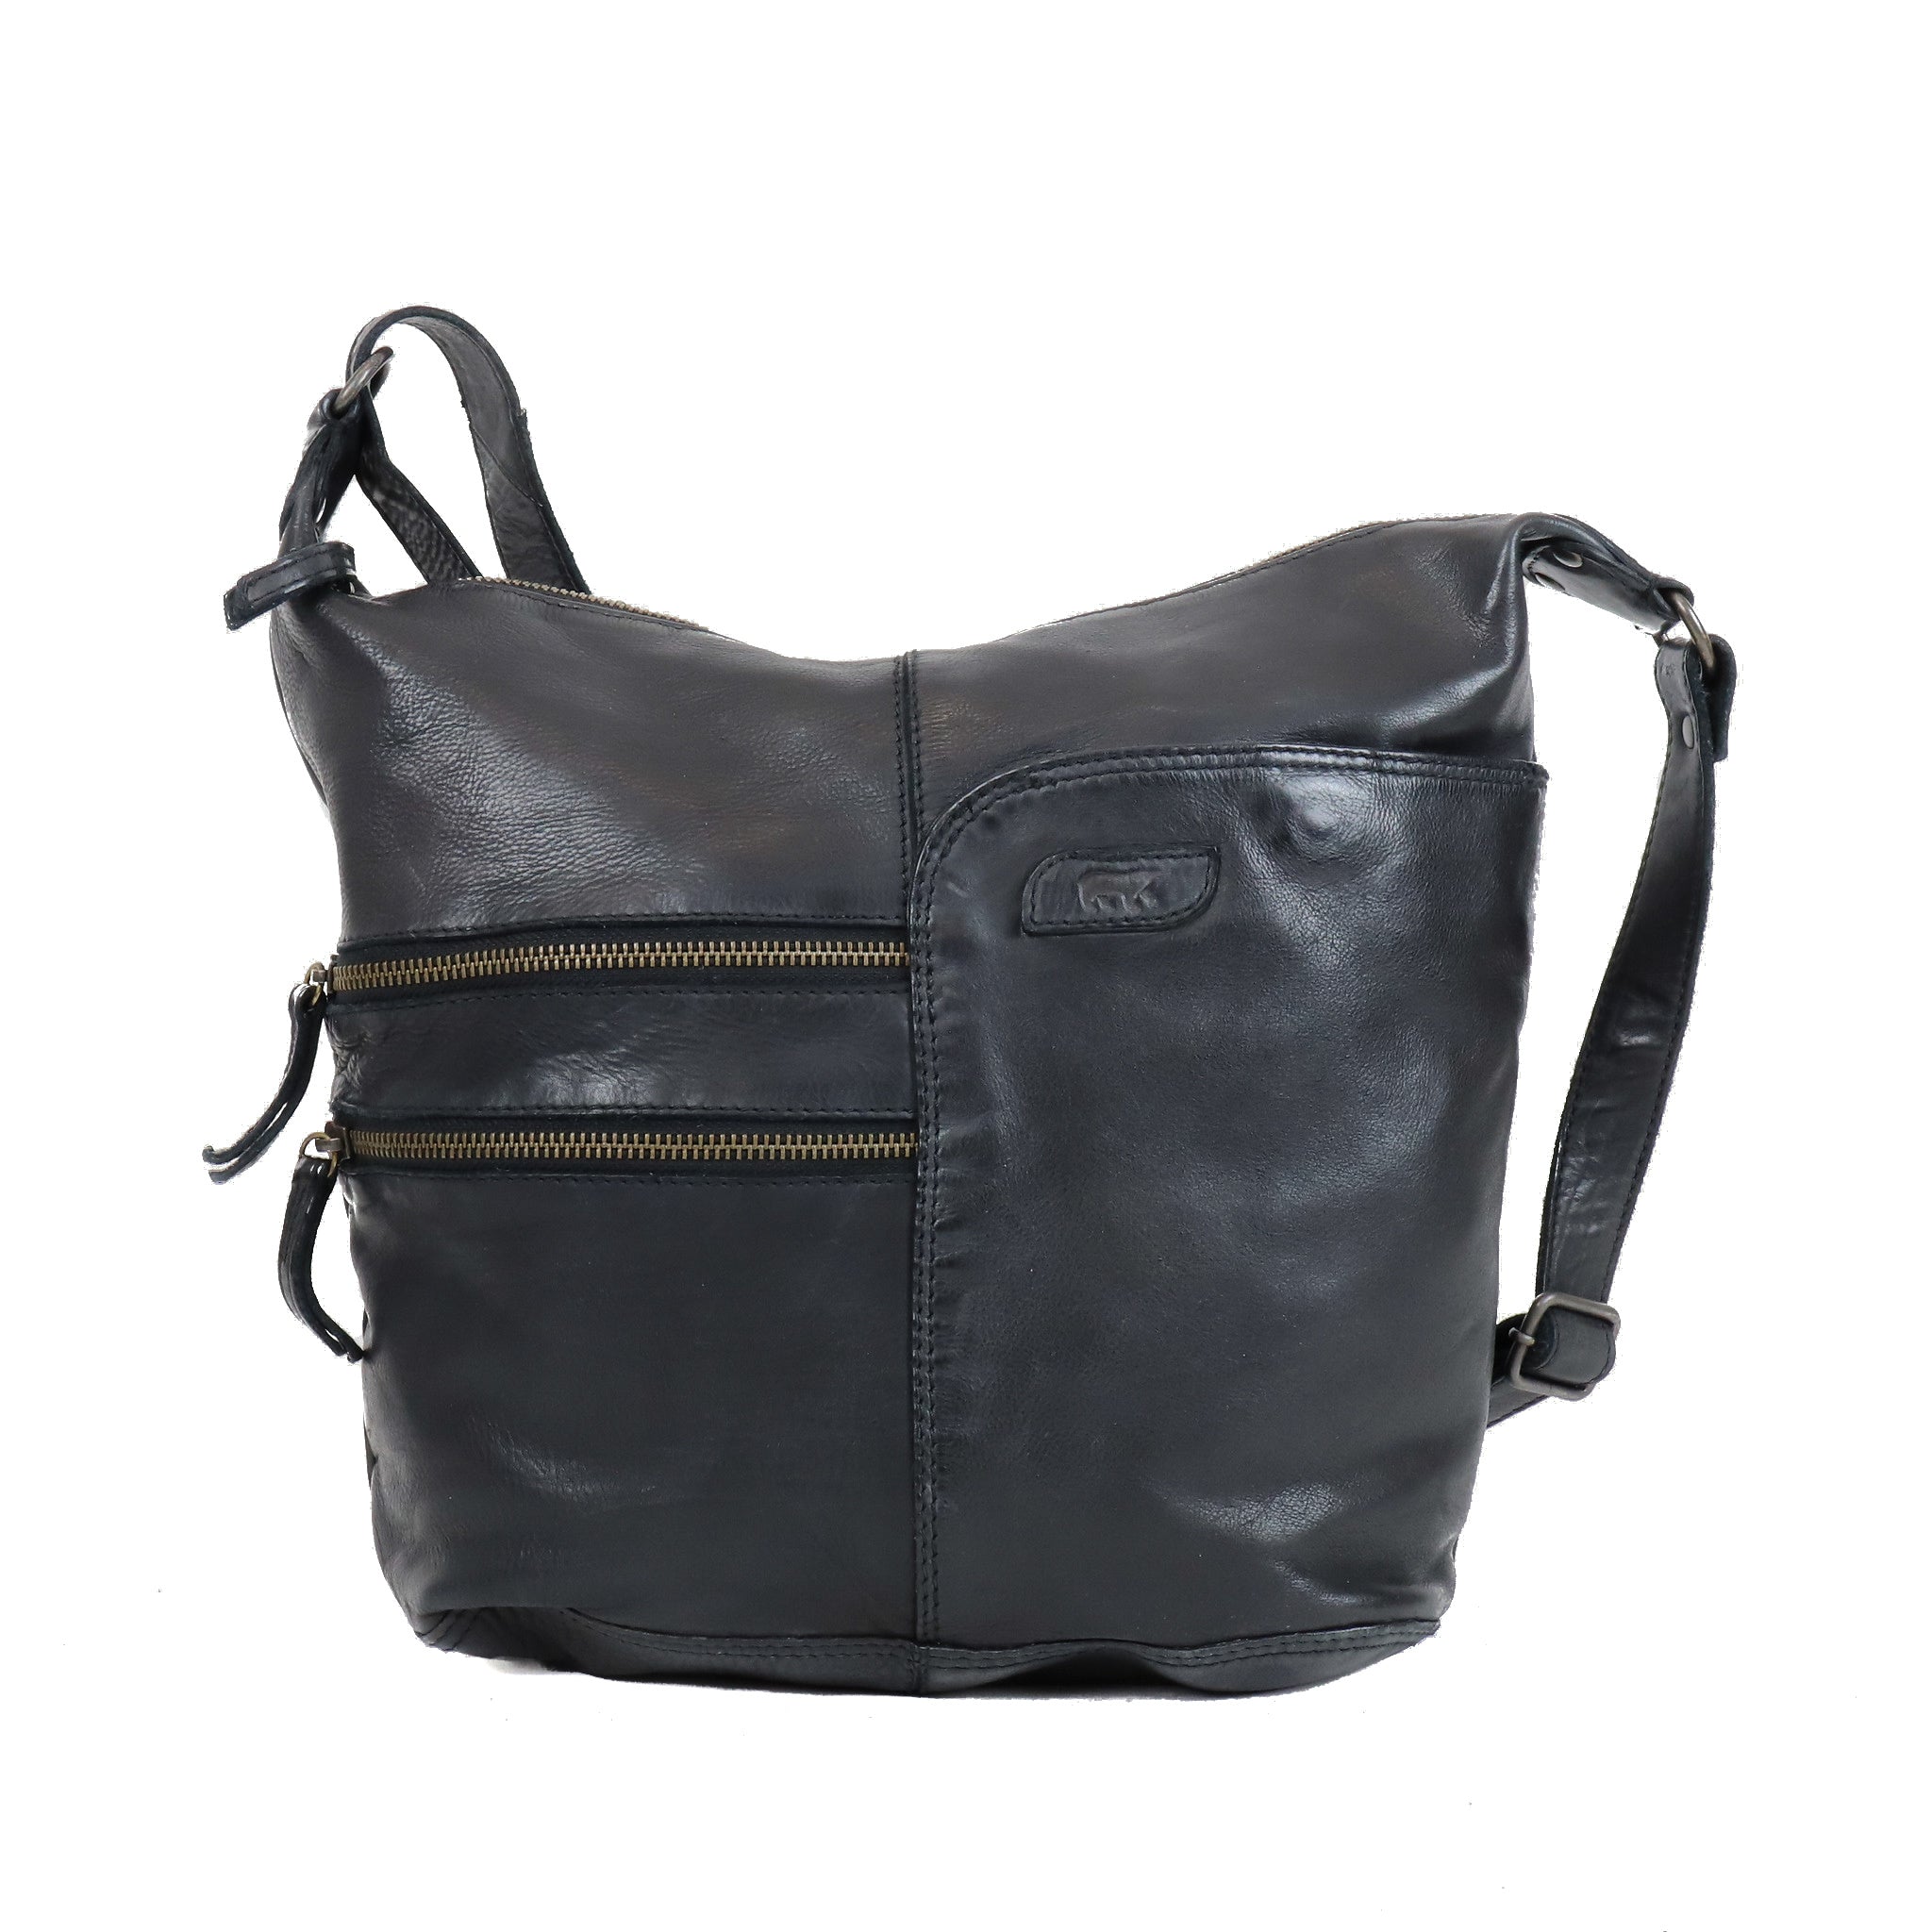 Shoulder bag 'Frieda' black - CL 40498